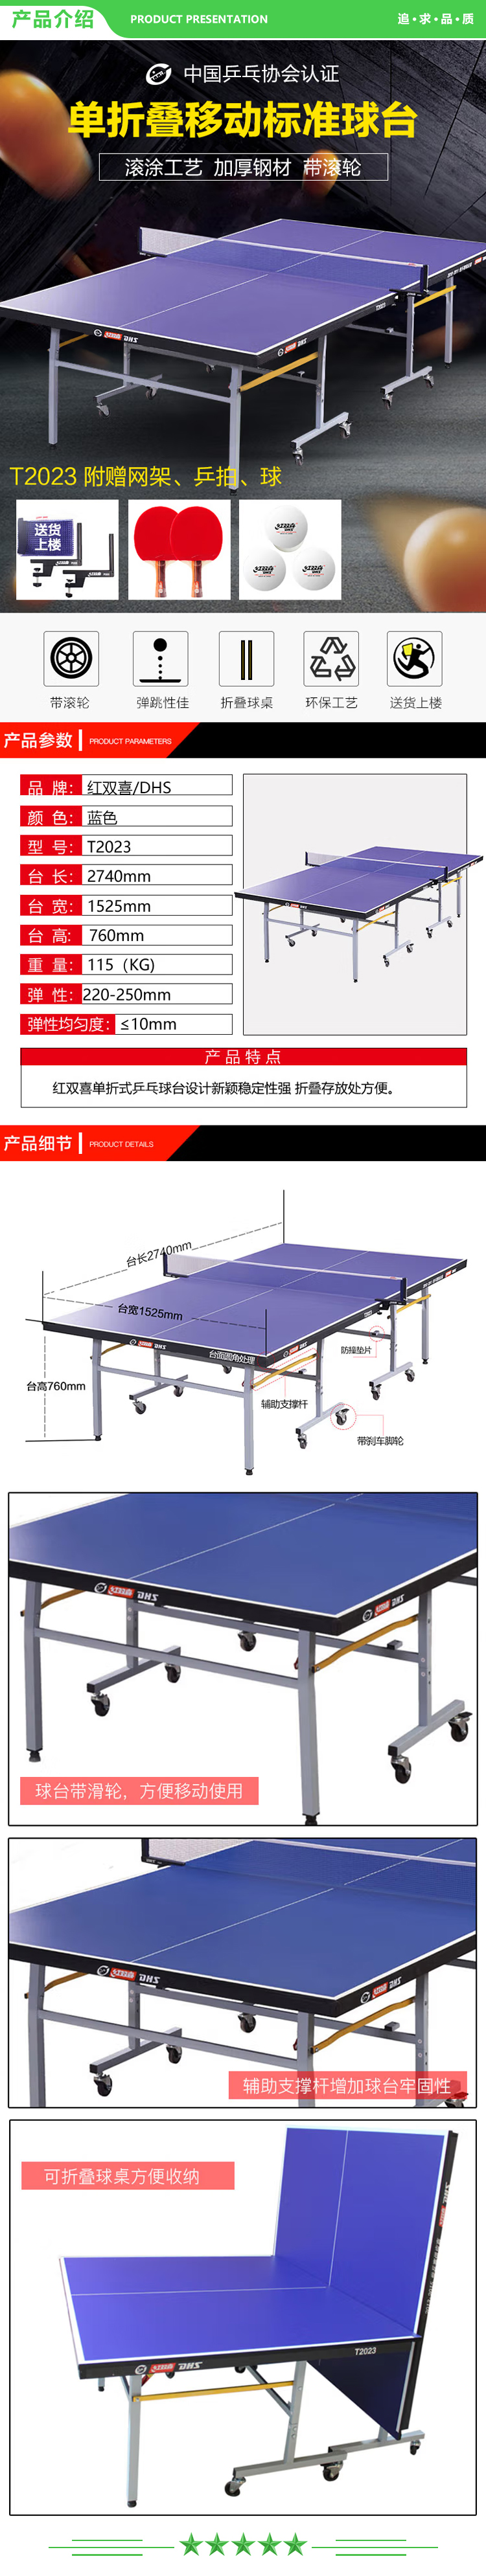 红双喜 DHS T2023 乒乓球桌 单折叠室内家用案子滚轮乒乓球台(附网架 兵拍 乒球)  (2).jpg